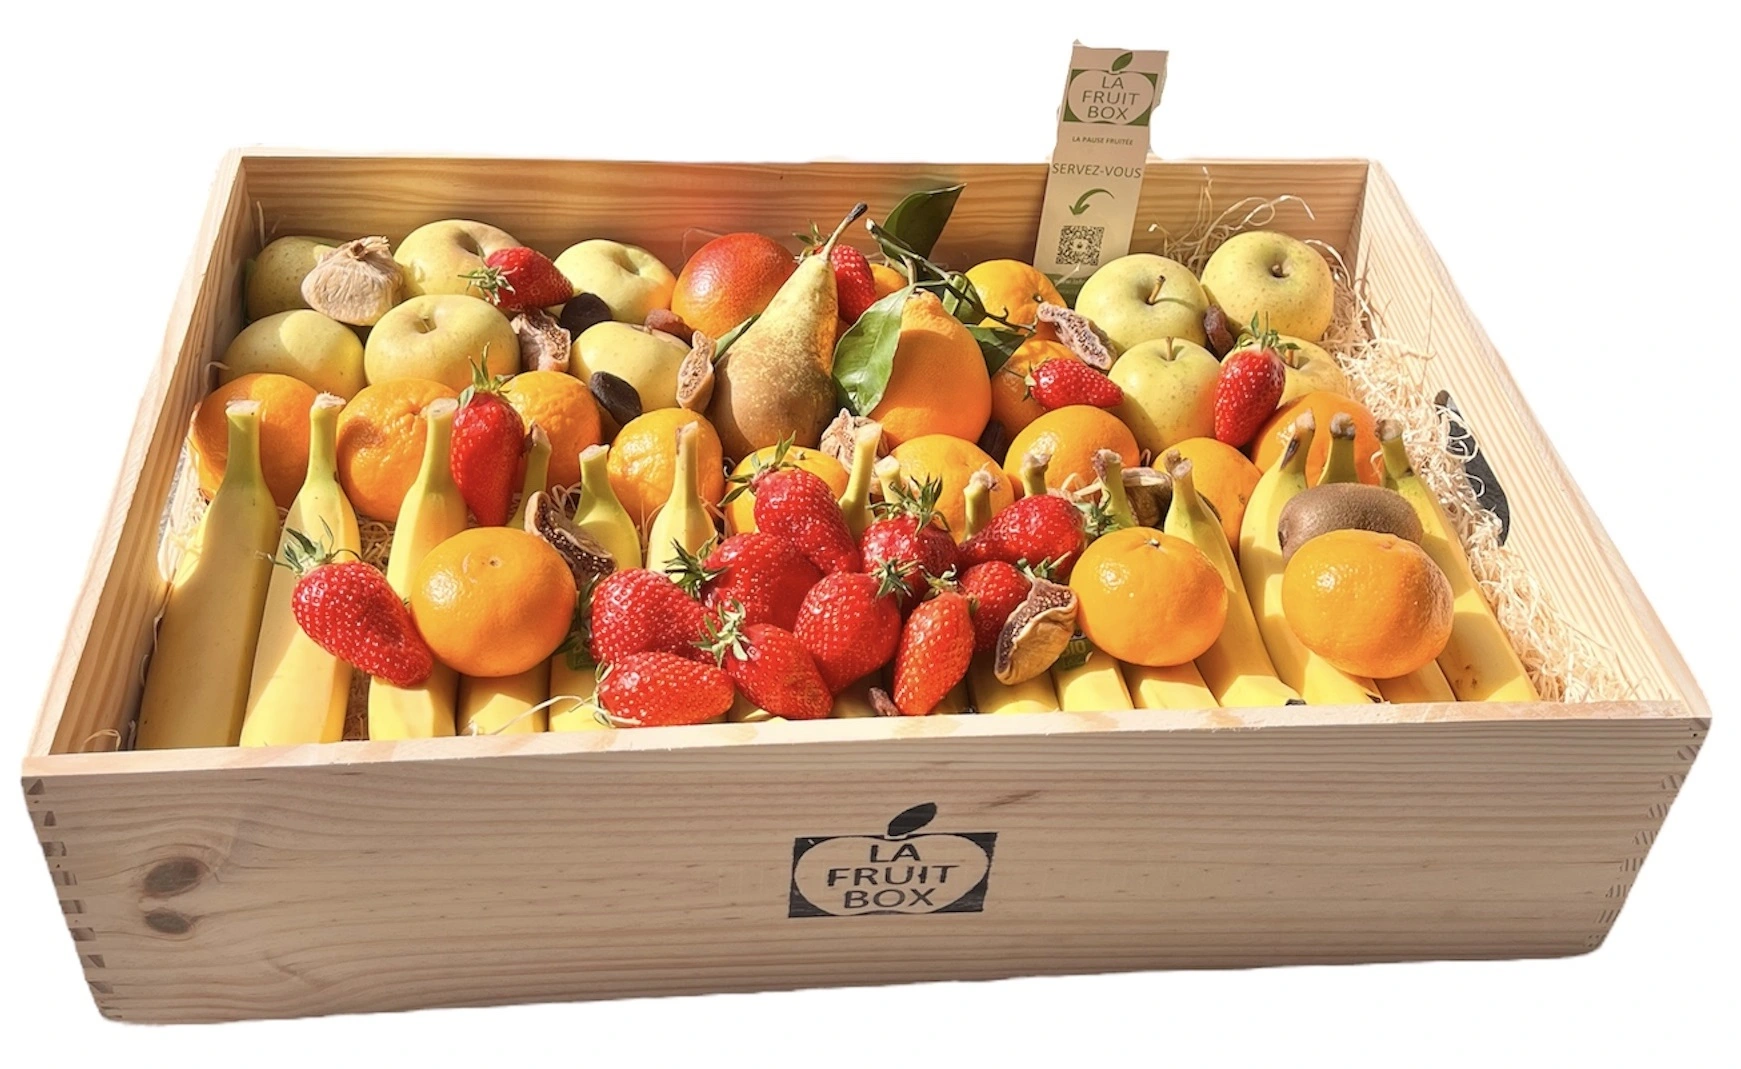 grande box 7kg fruits saison locaux lafruitbox nantes